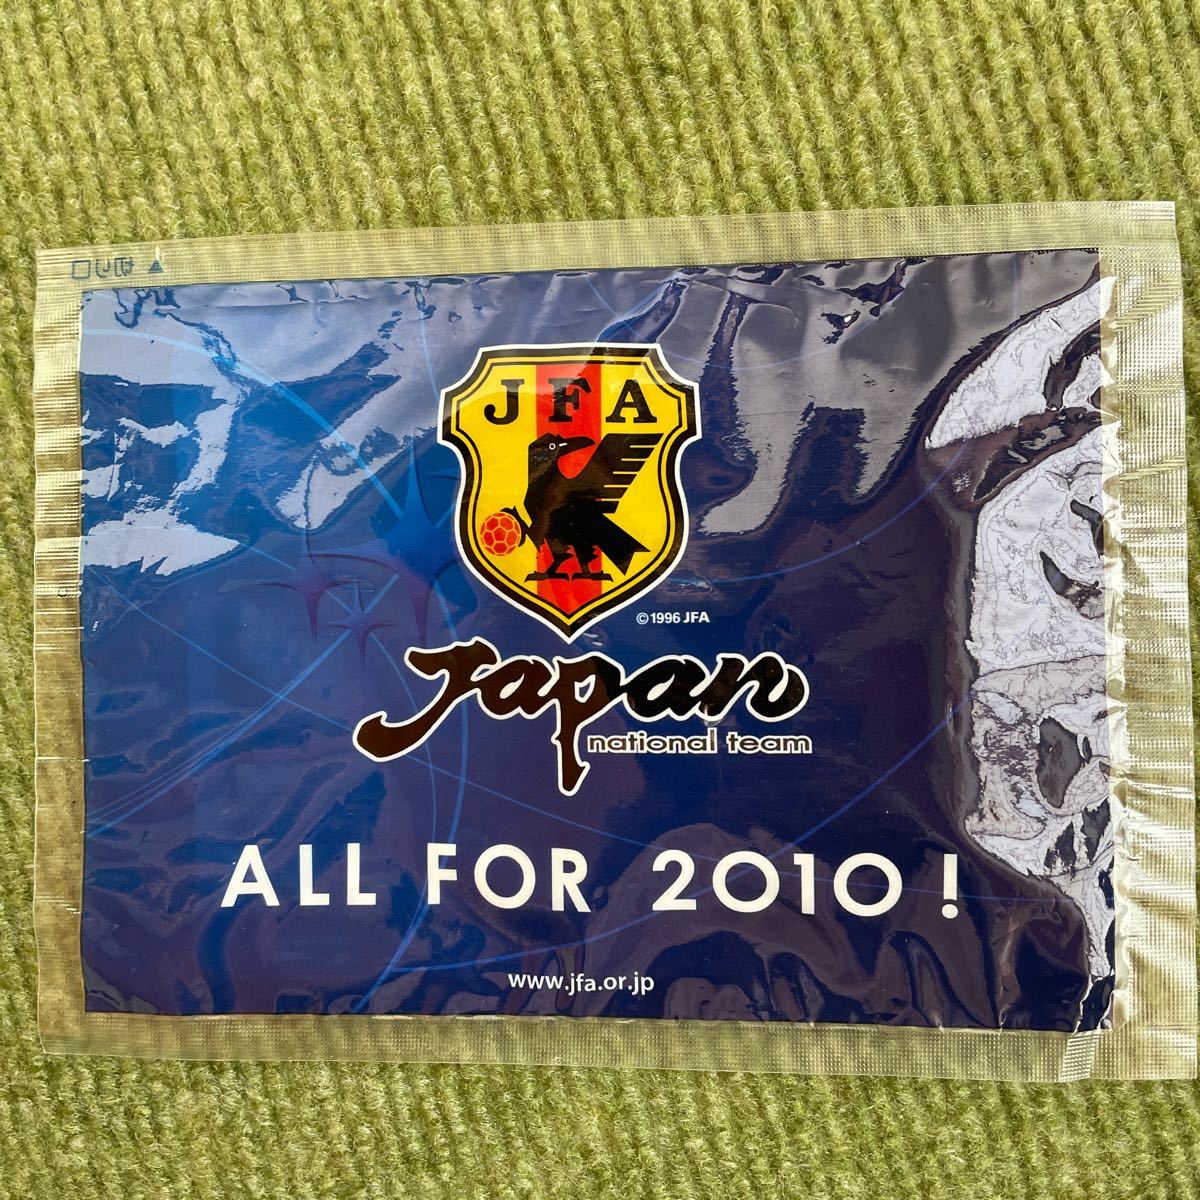 週刊サッカーマガジン・2002FIFAワールドカップ公式プログラムなど